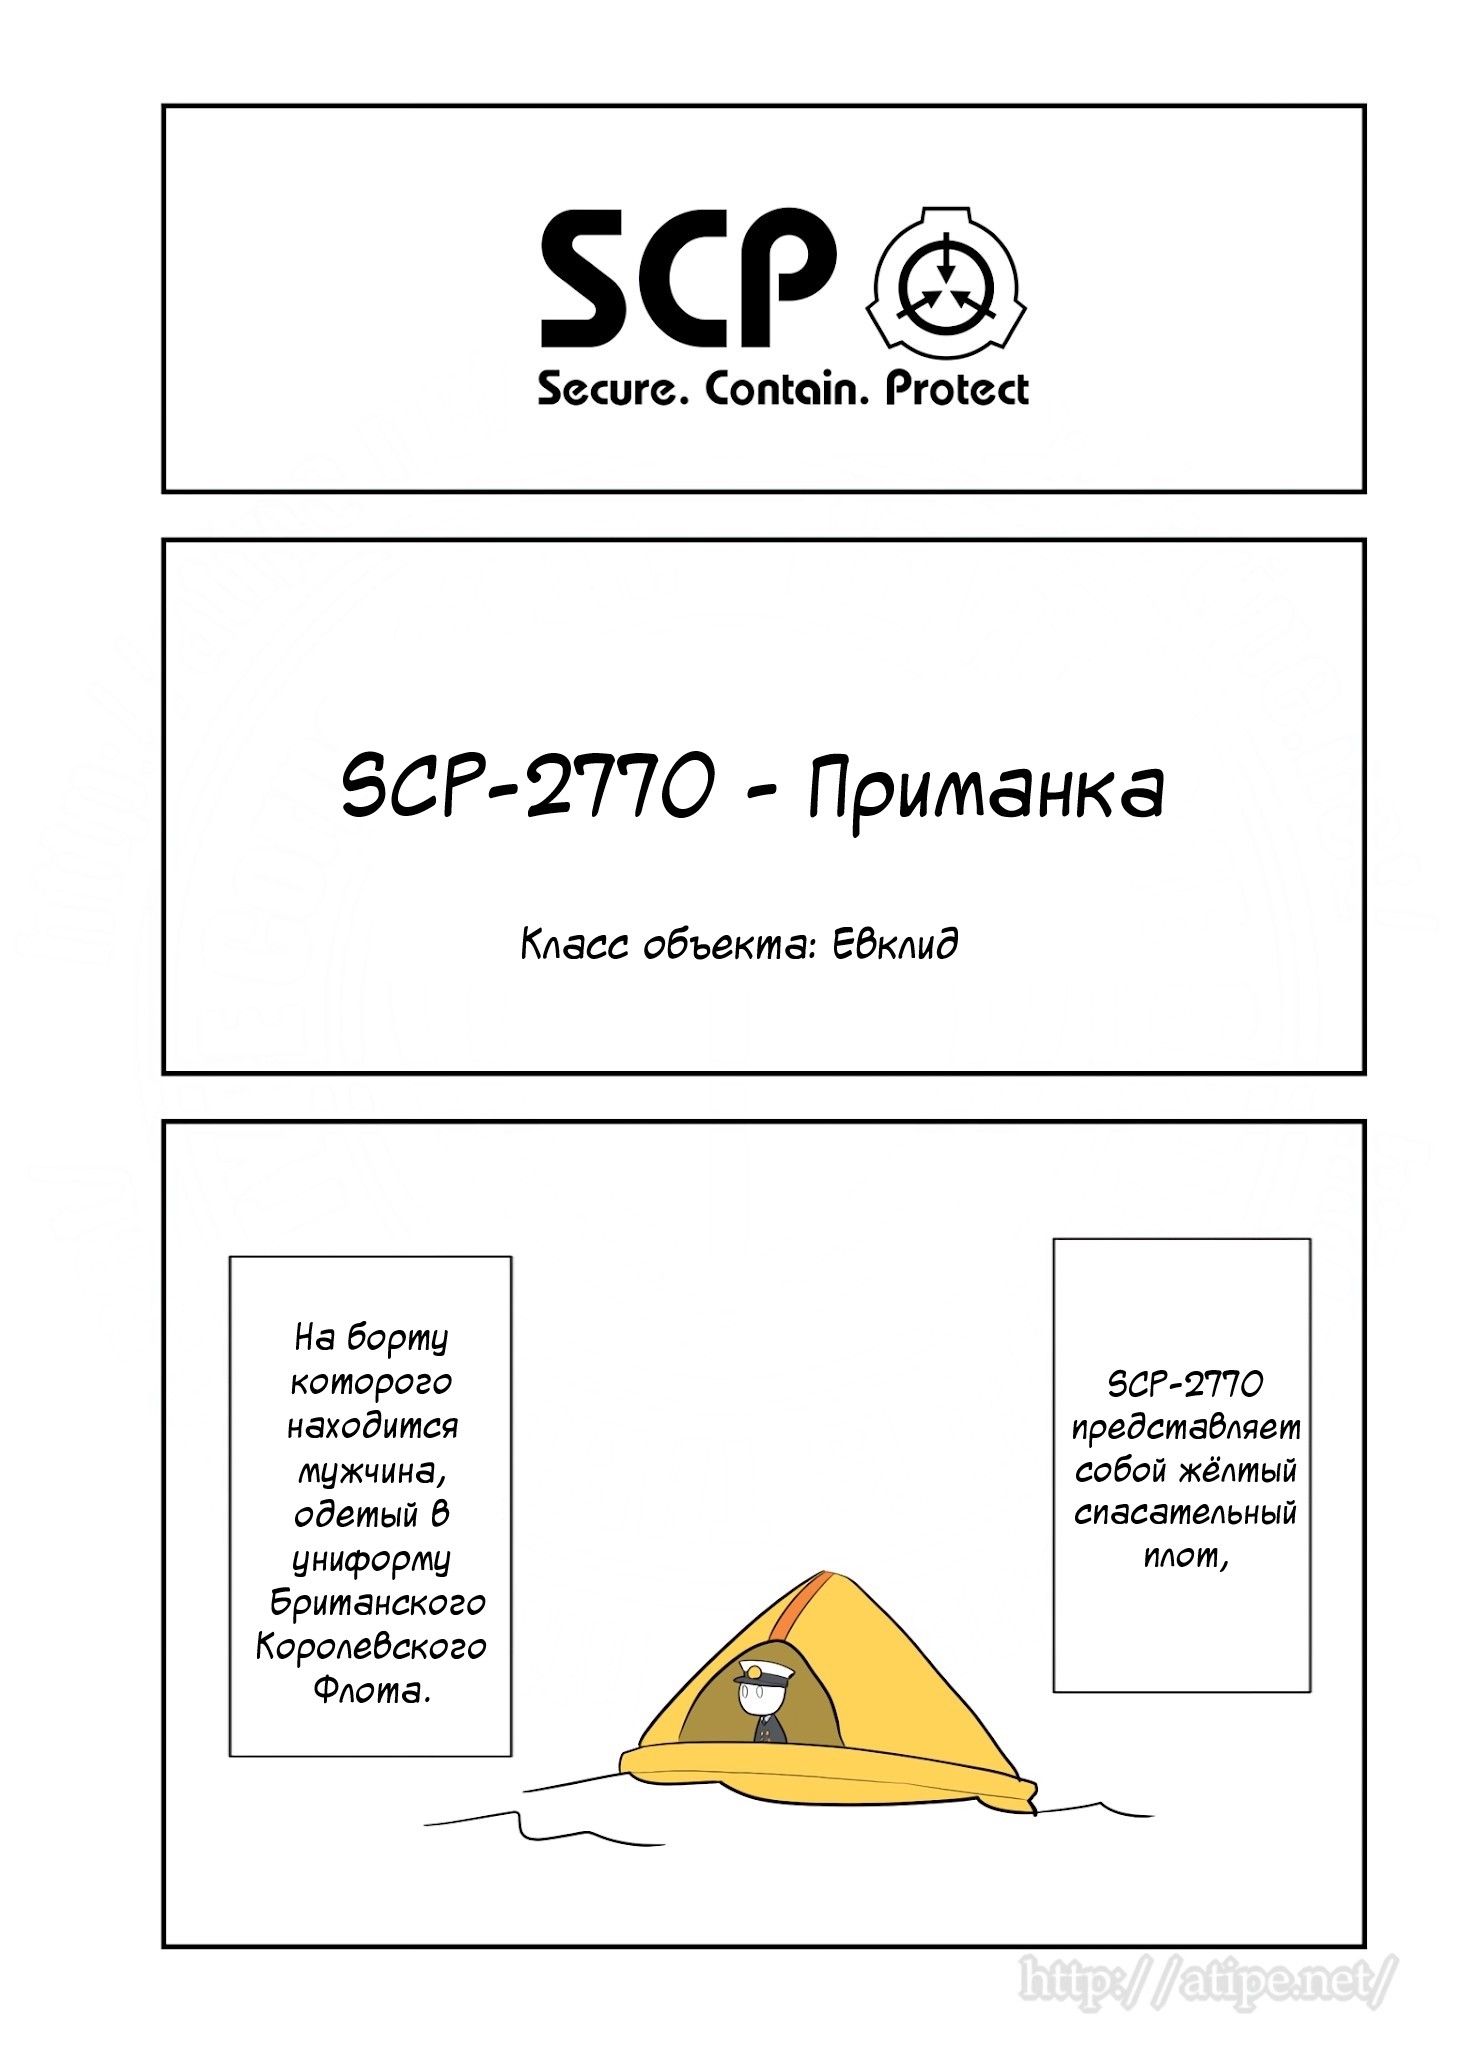 Упрощенный SCP 1 - 81 SCP-2770